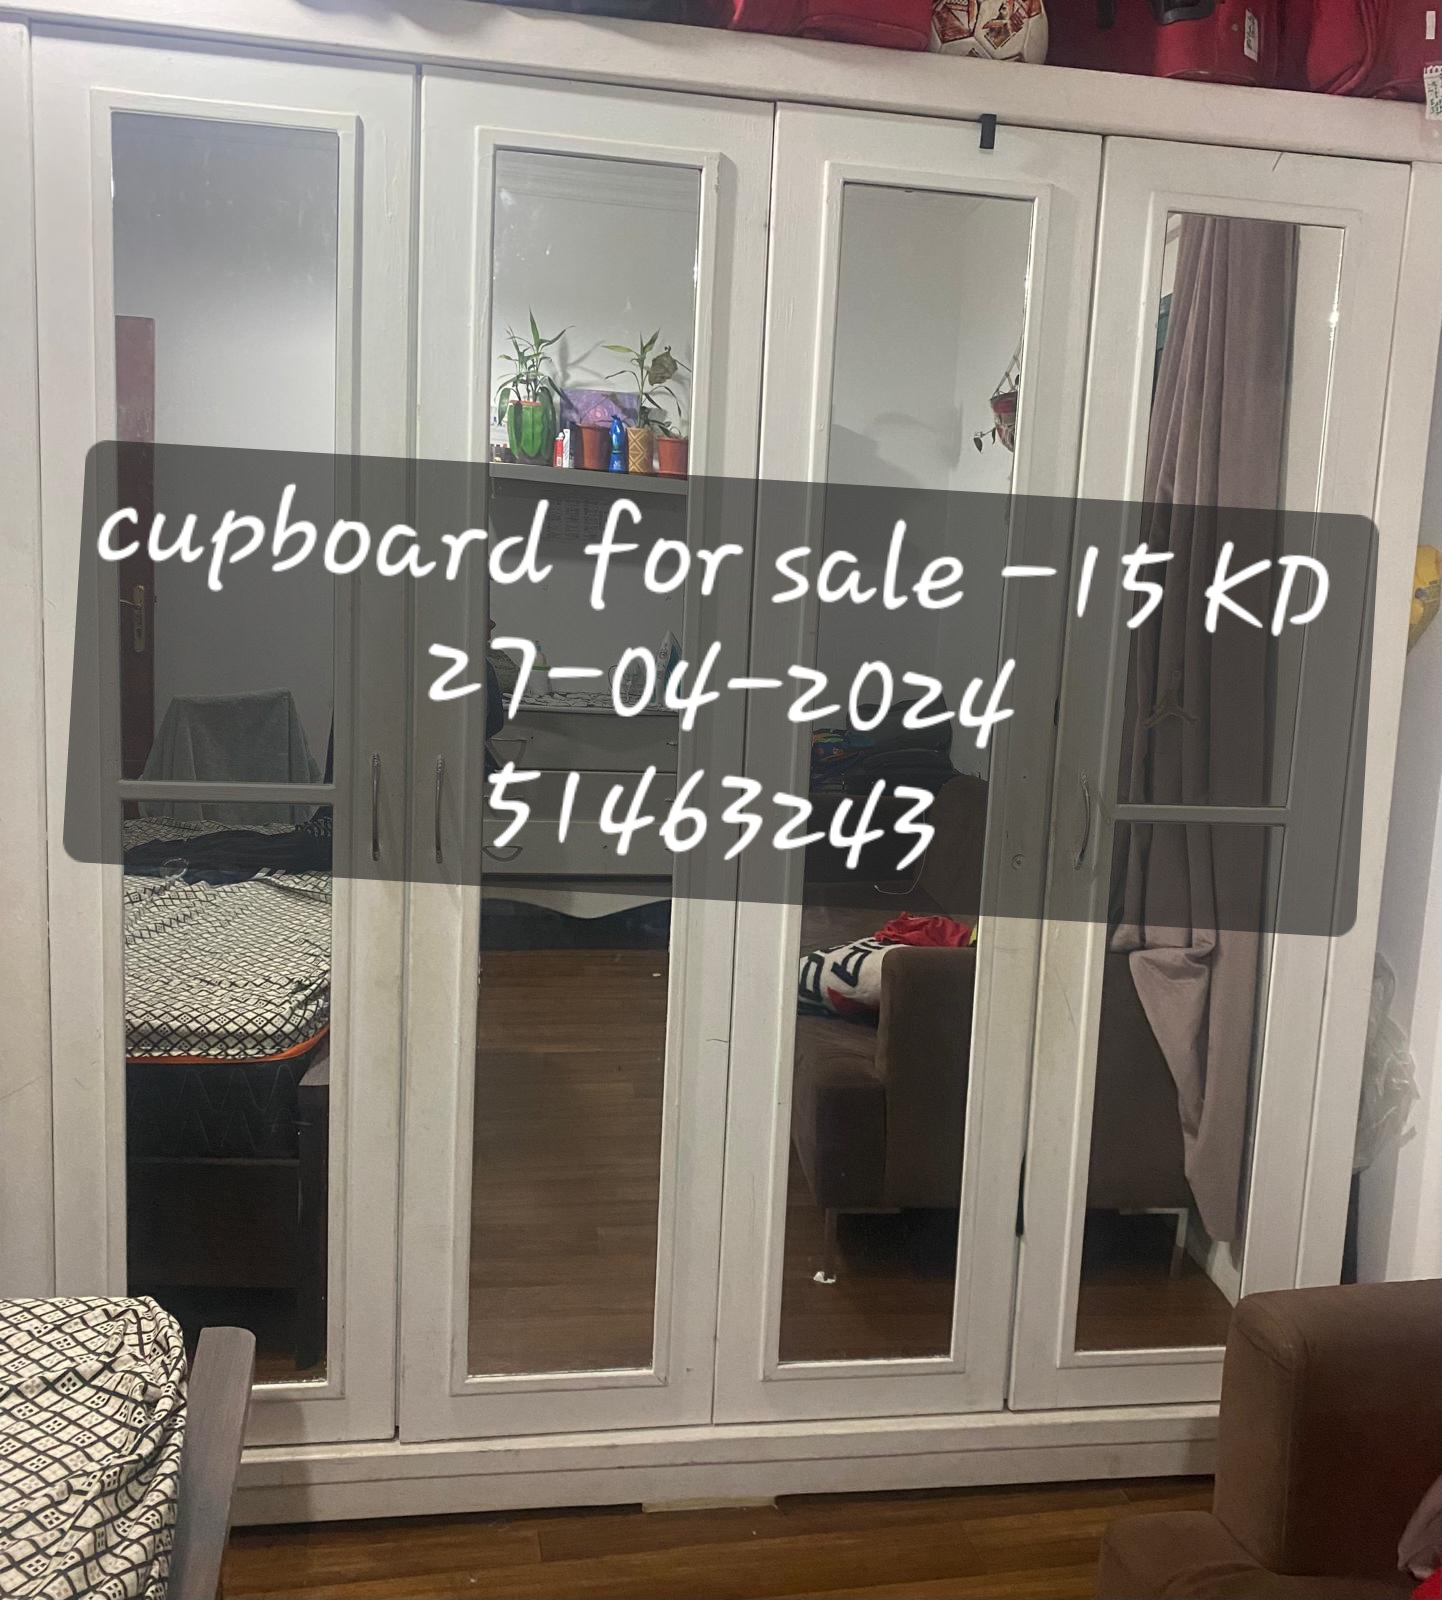 Cupboard for sale -10 KD